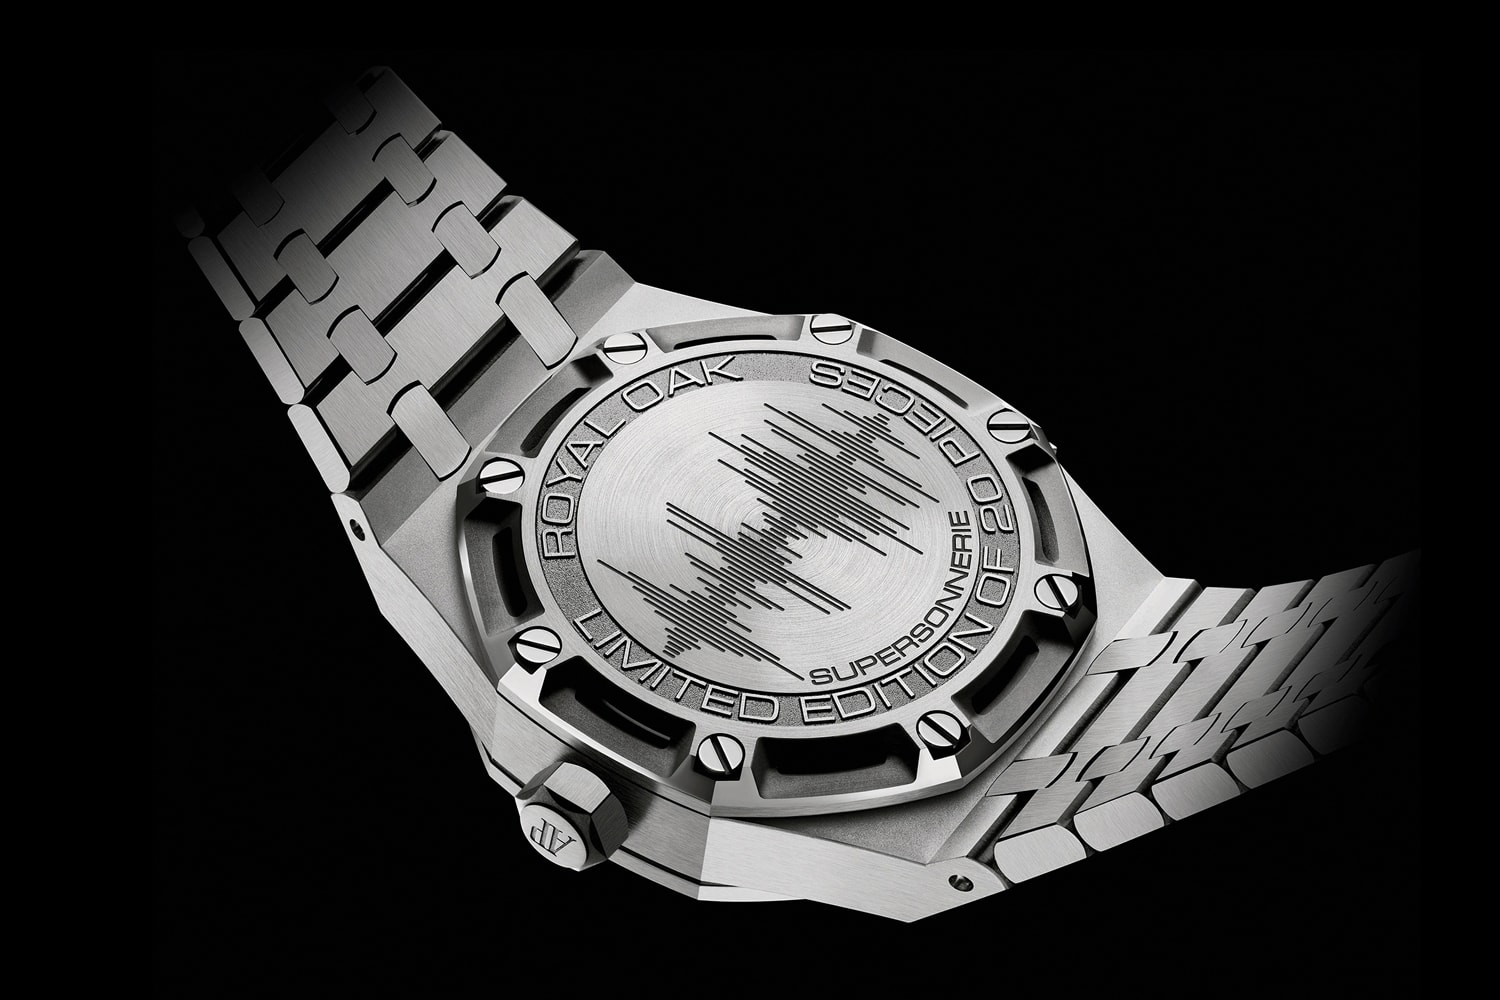 Audemars Piguet Royal Oak с минутным репетиром Supersonnerie Info часы аксессуары роскошные модные швейцарские часы AP 